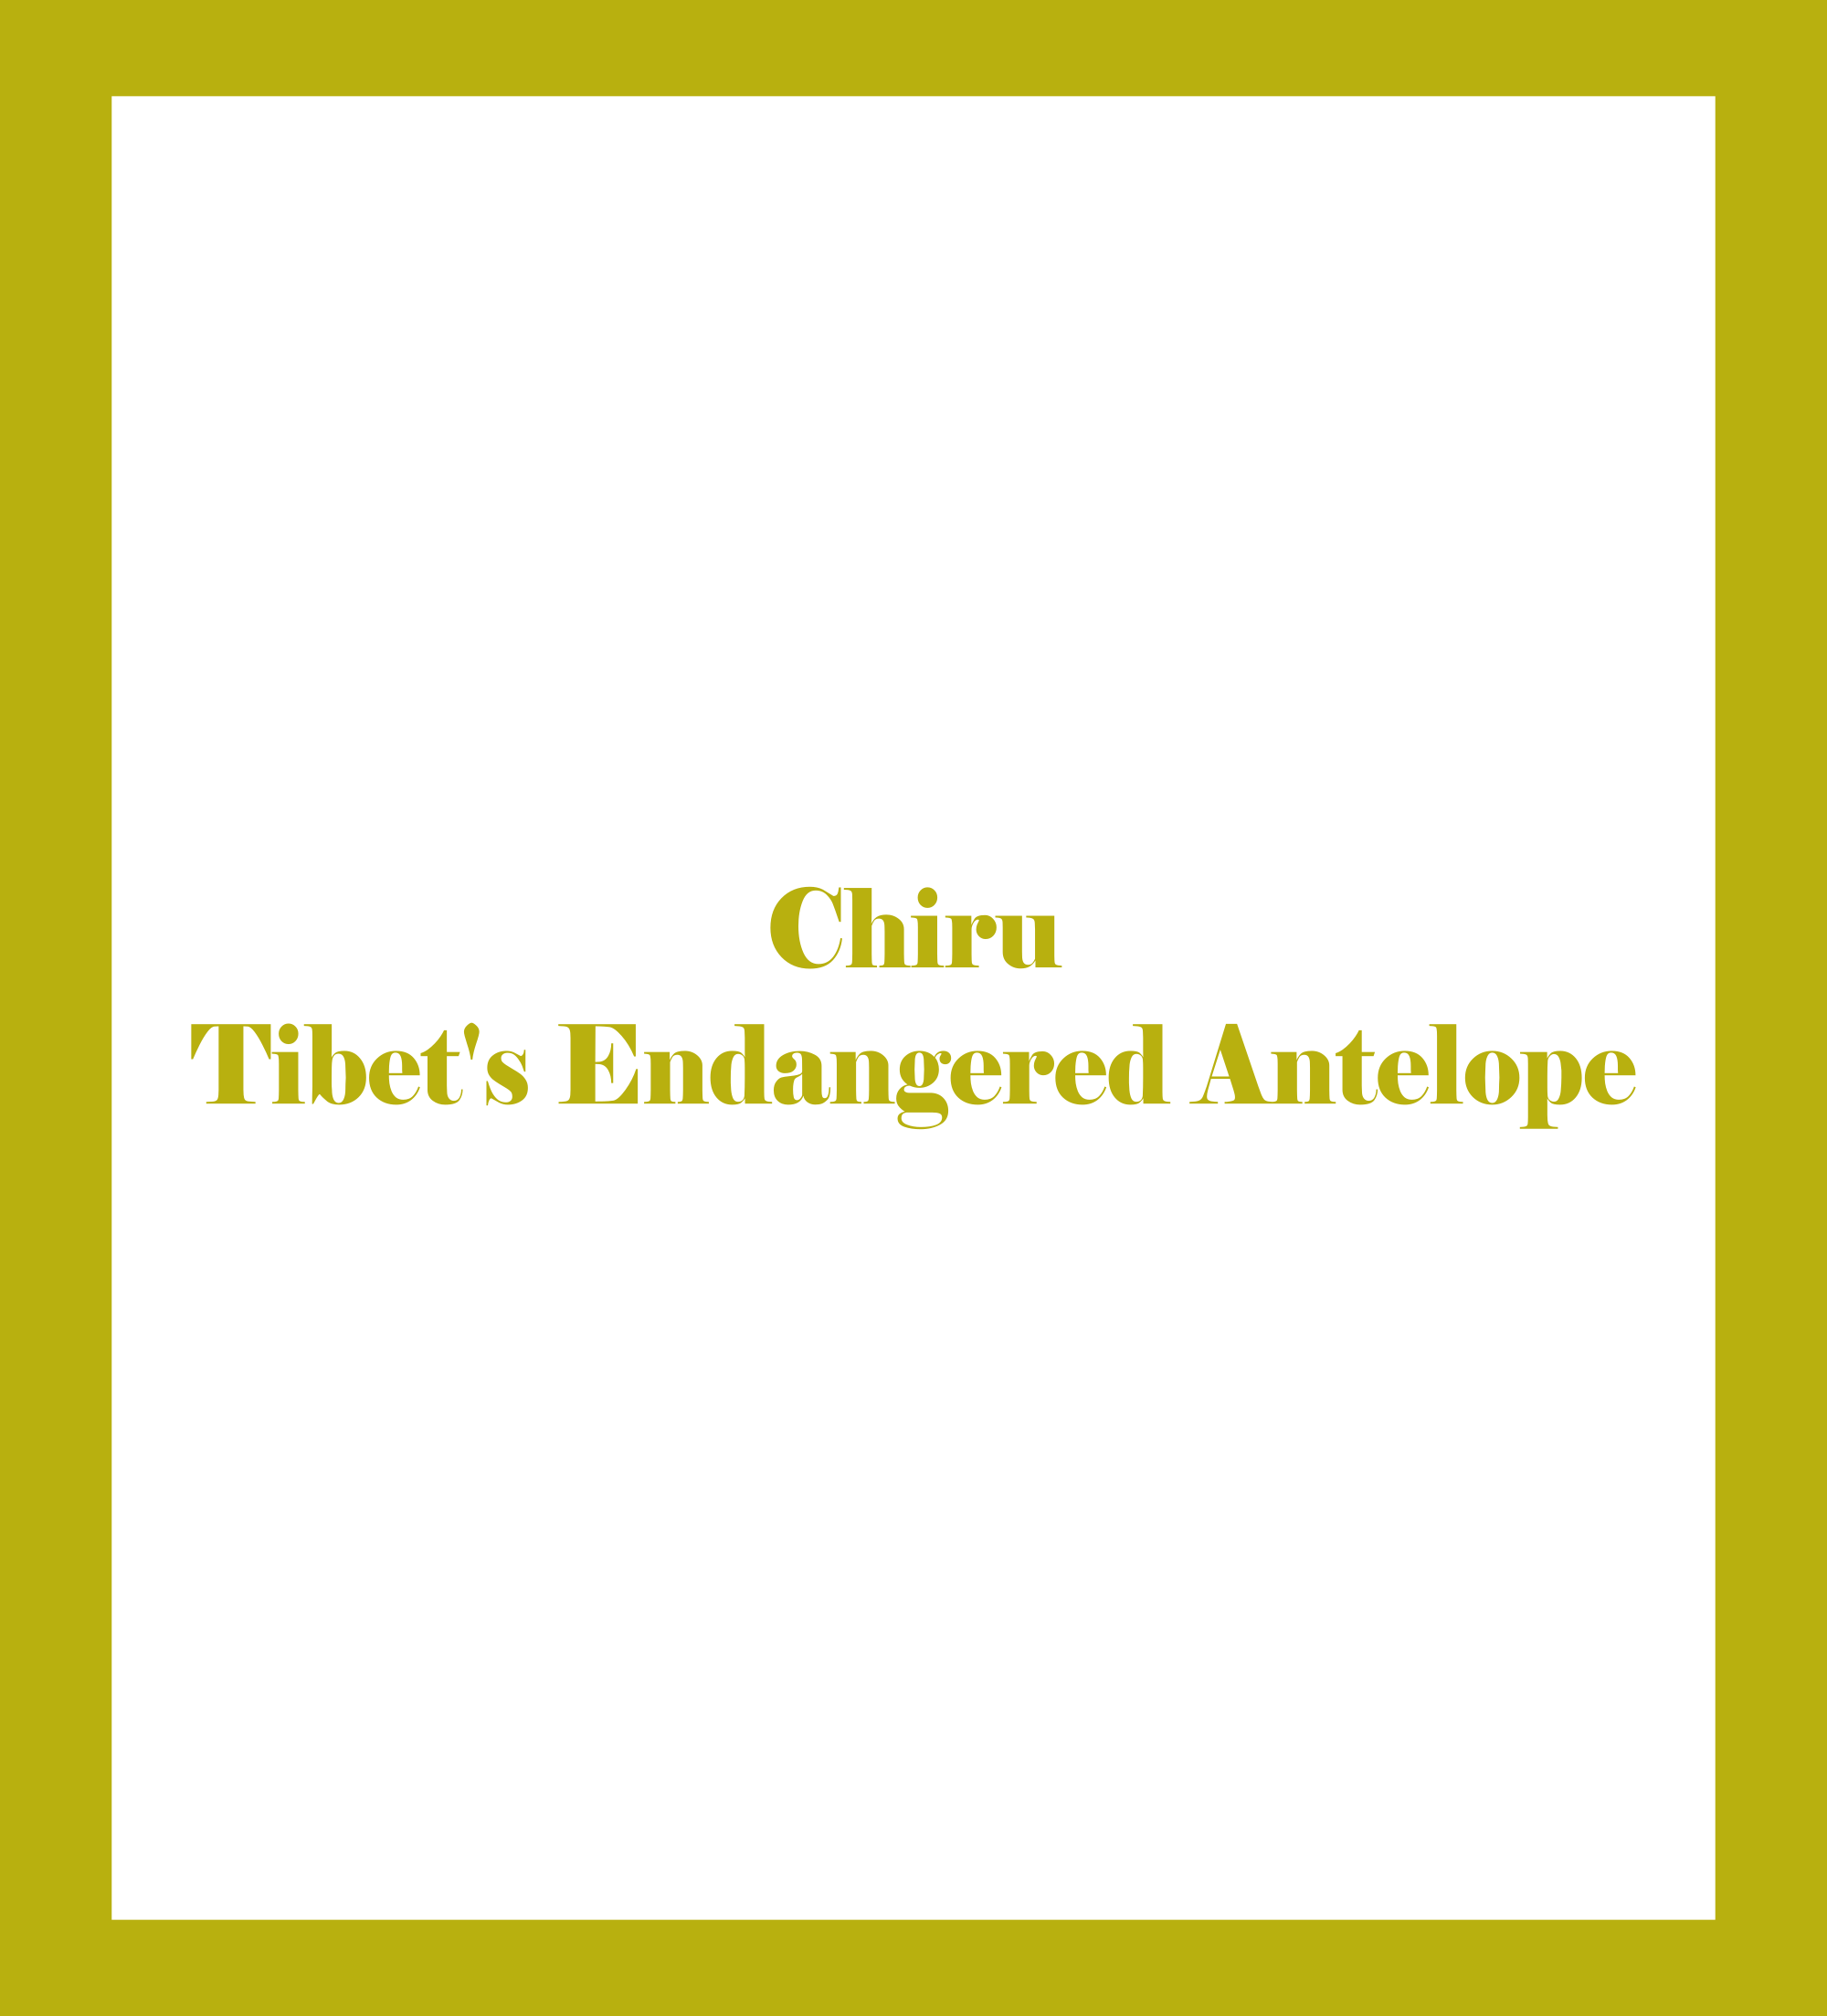 Chiru - Tibet's Endangered Antelope